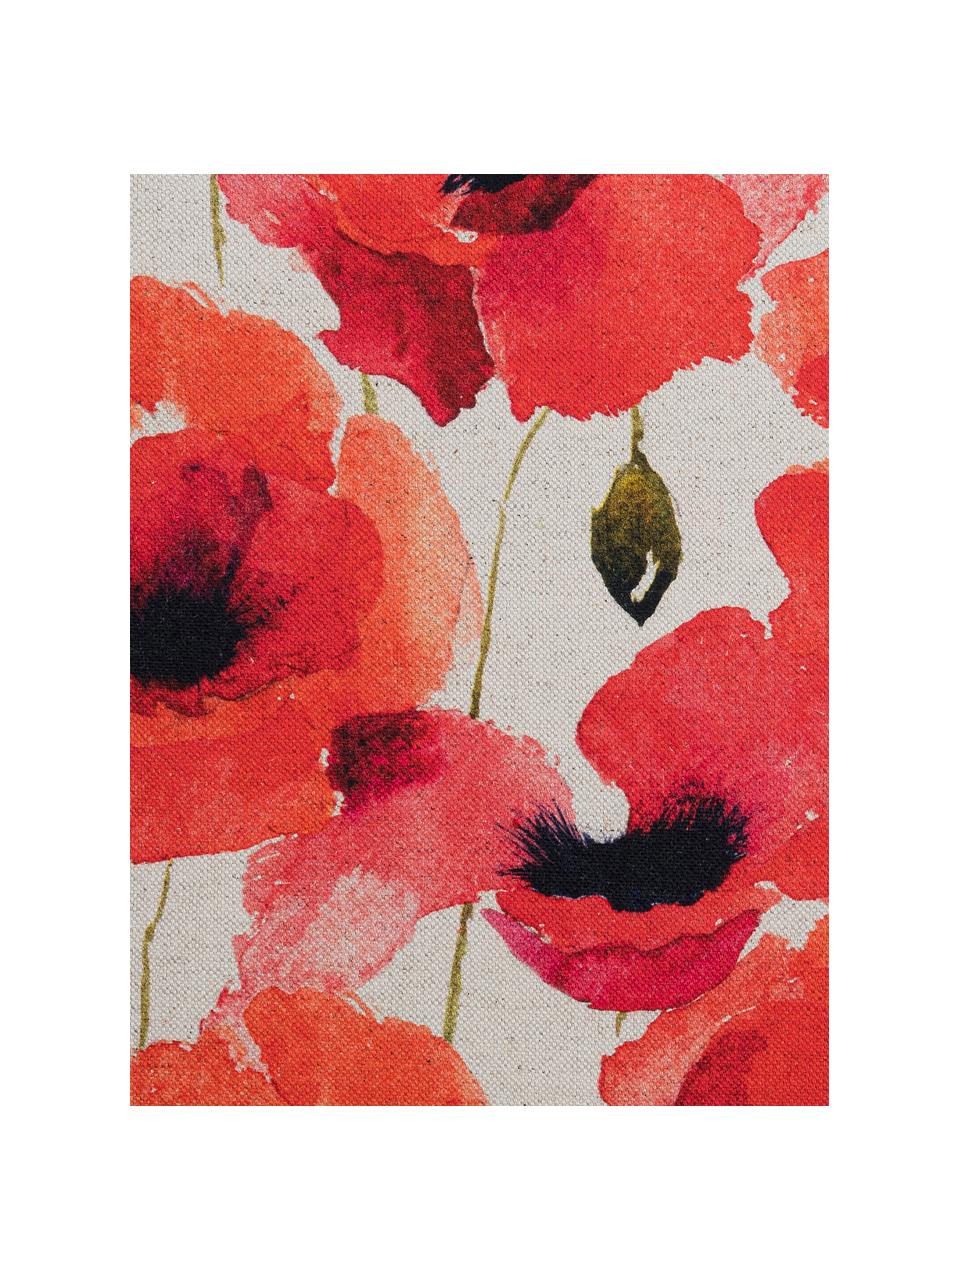 Kussenhoes Poppy met klaproos motief, 85% linnen, 15% katoen, Rood, wit, zwart, 40 x 40 cm